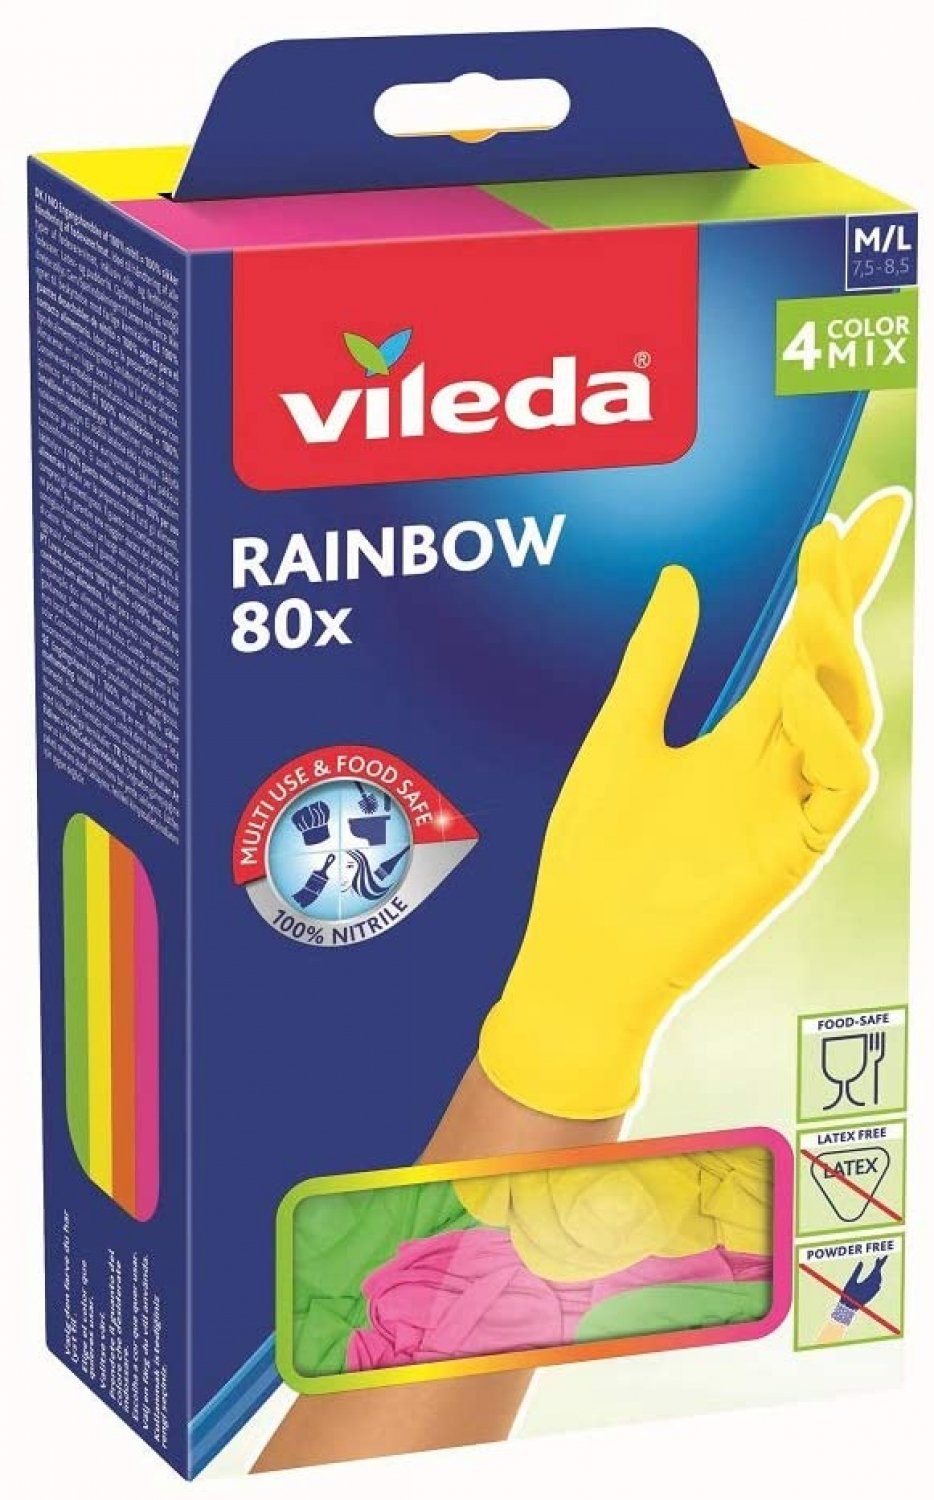 bunte Einweghandschuhe, Nitril-Handschuhe 80 Nitril St. Vileda Einmalhandschuhe, 4 M/L Größe: Farben, Vileda Rainbow